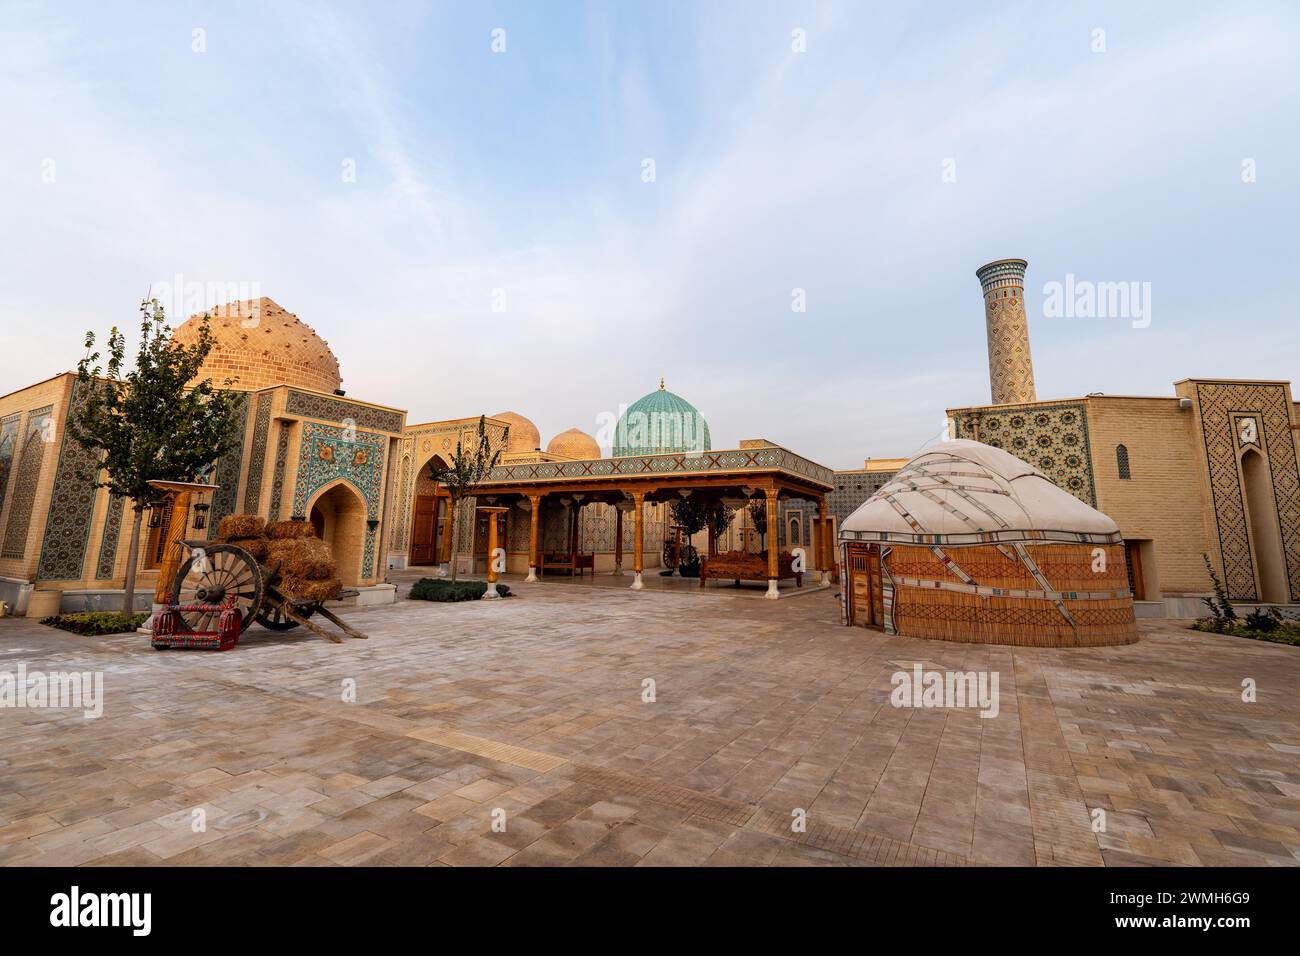 Strade vuote nella città Eterna di Samarcanda, Uzbekistan. L'architettura tradizionale della vecchia Asia centrale e del Medio Oriente. Foto Stock